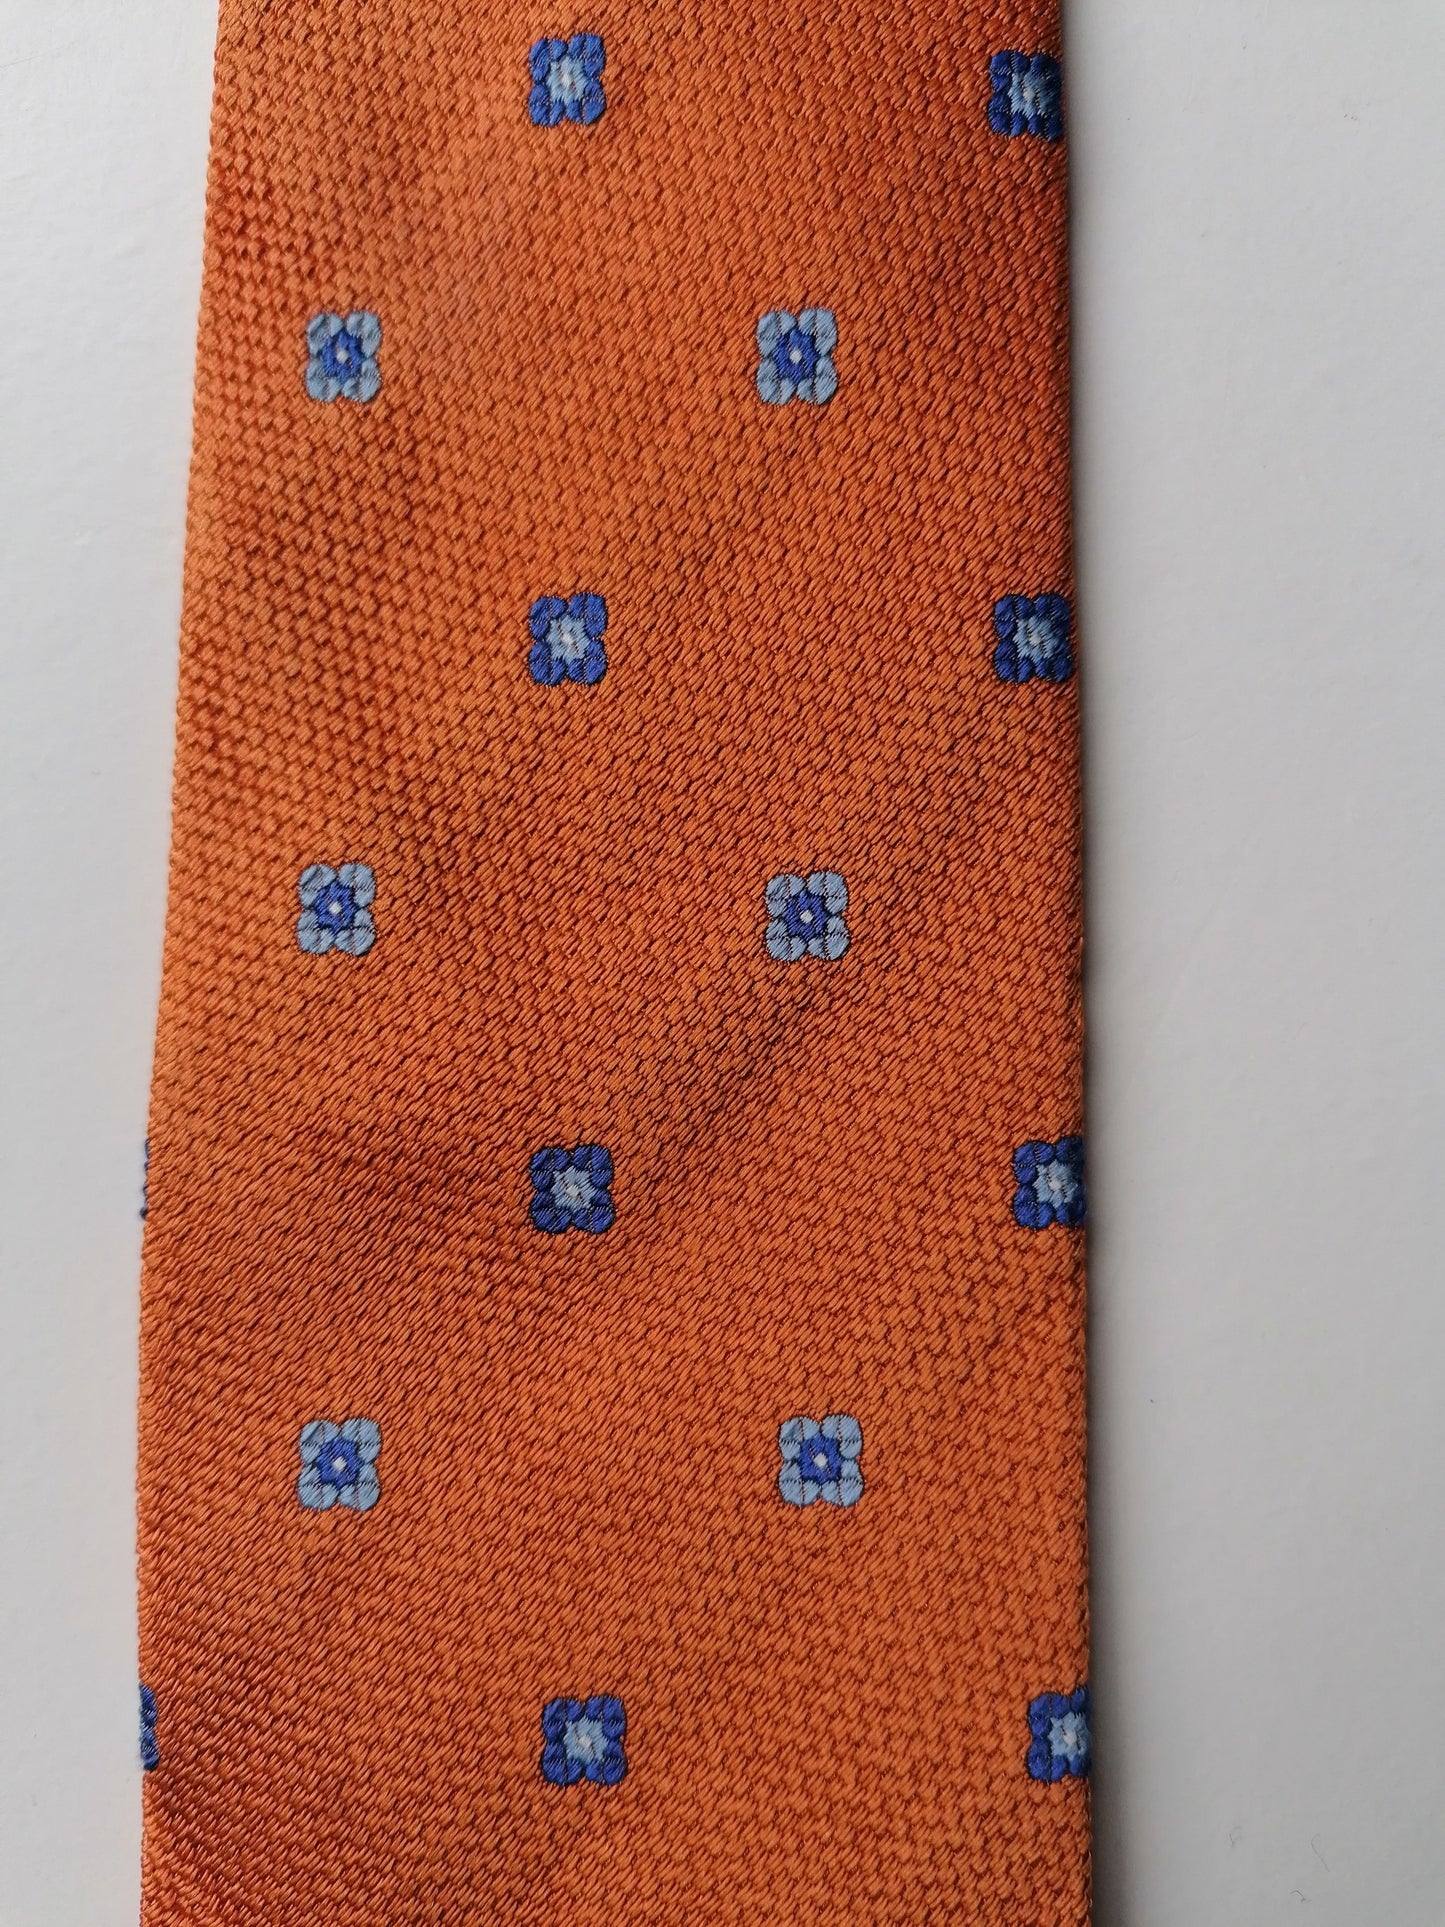 Vakko Silk Tie. Couleur bleu orange.